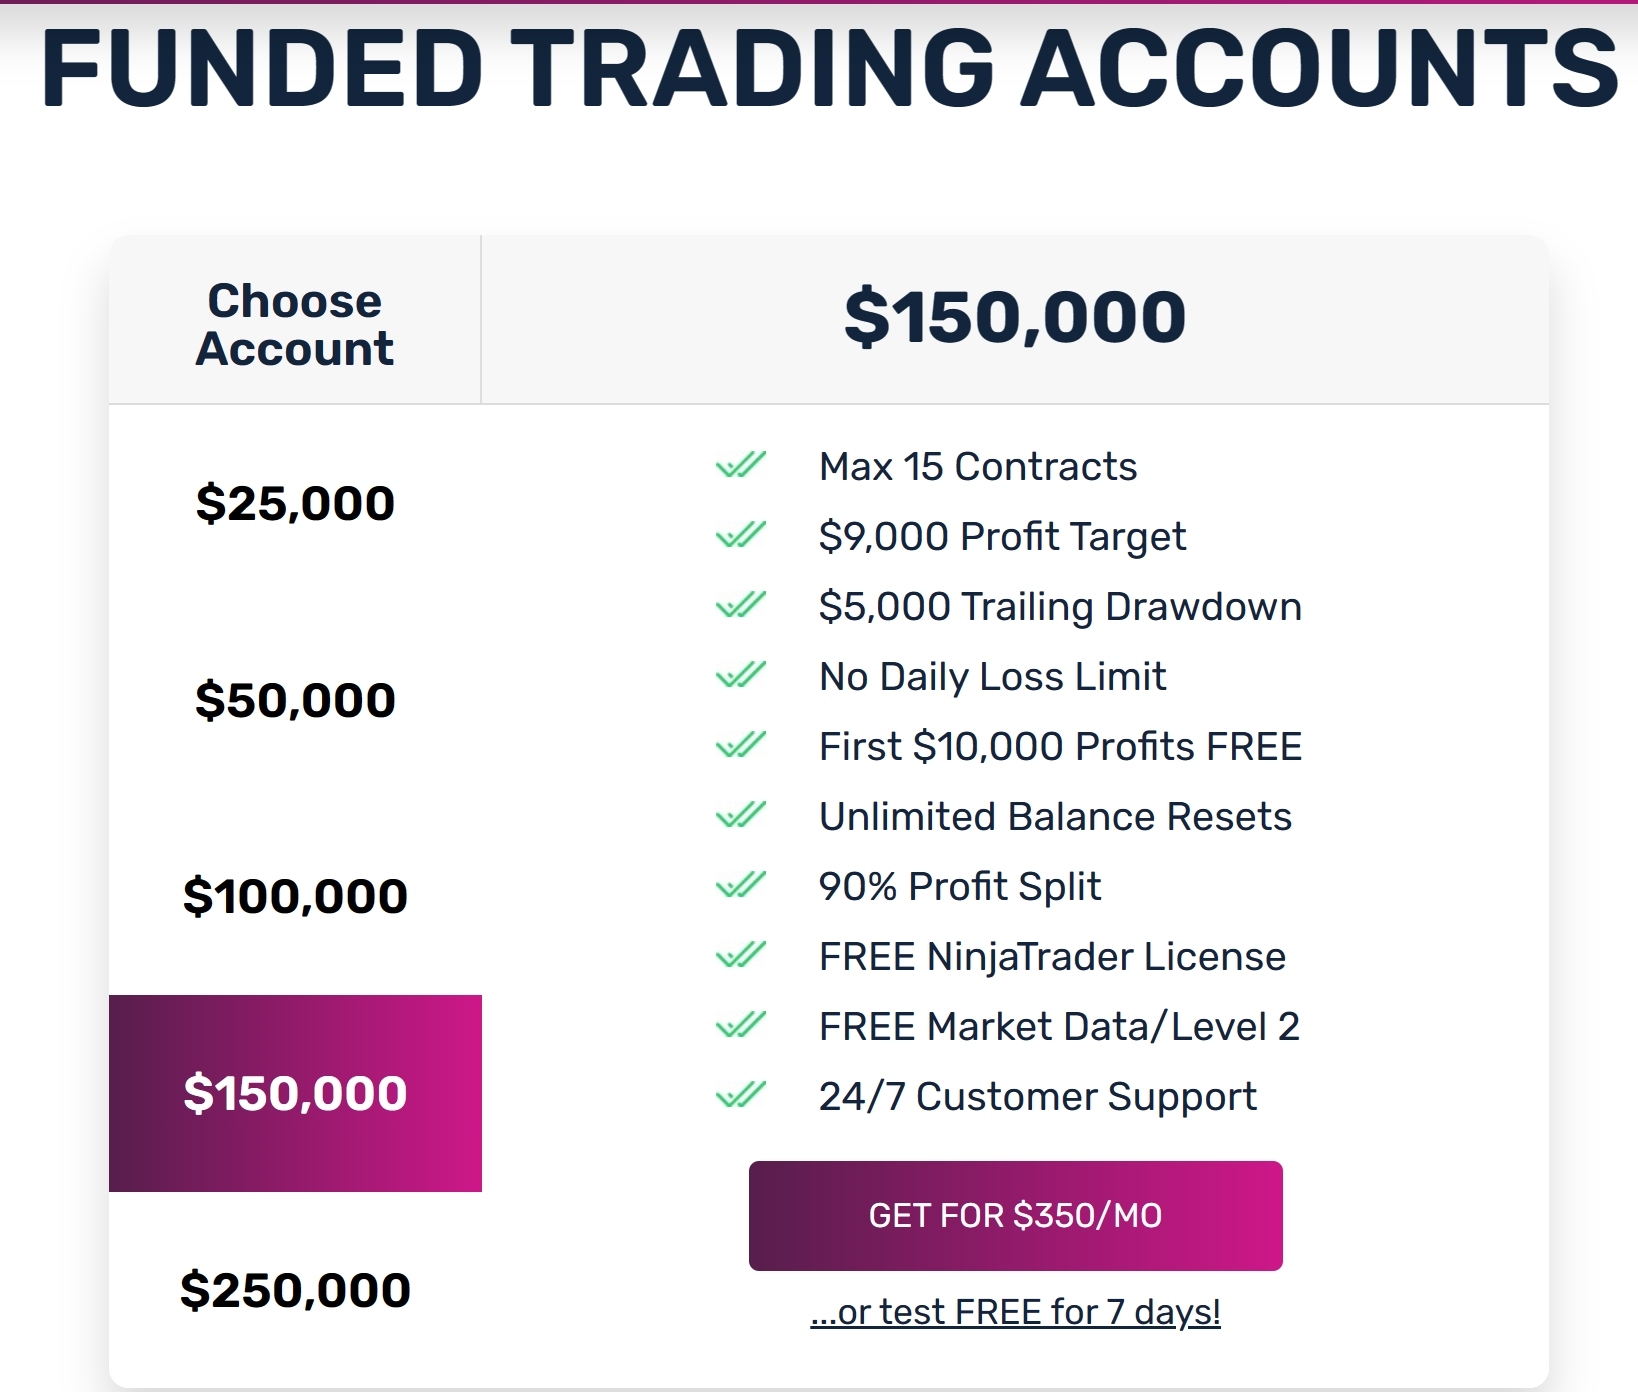 OneUp Trader funded trader program